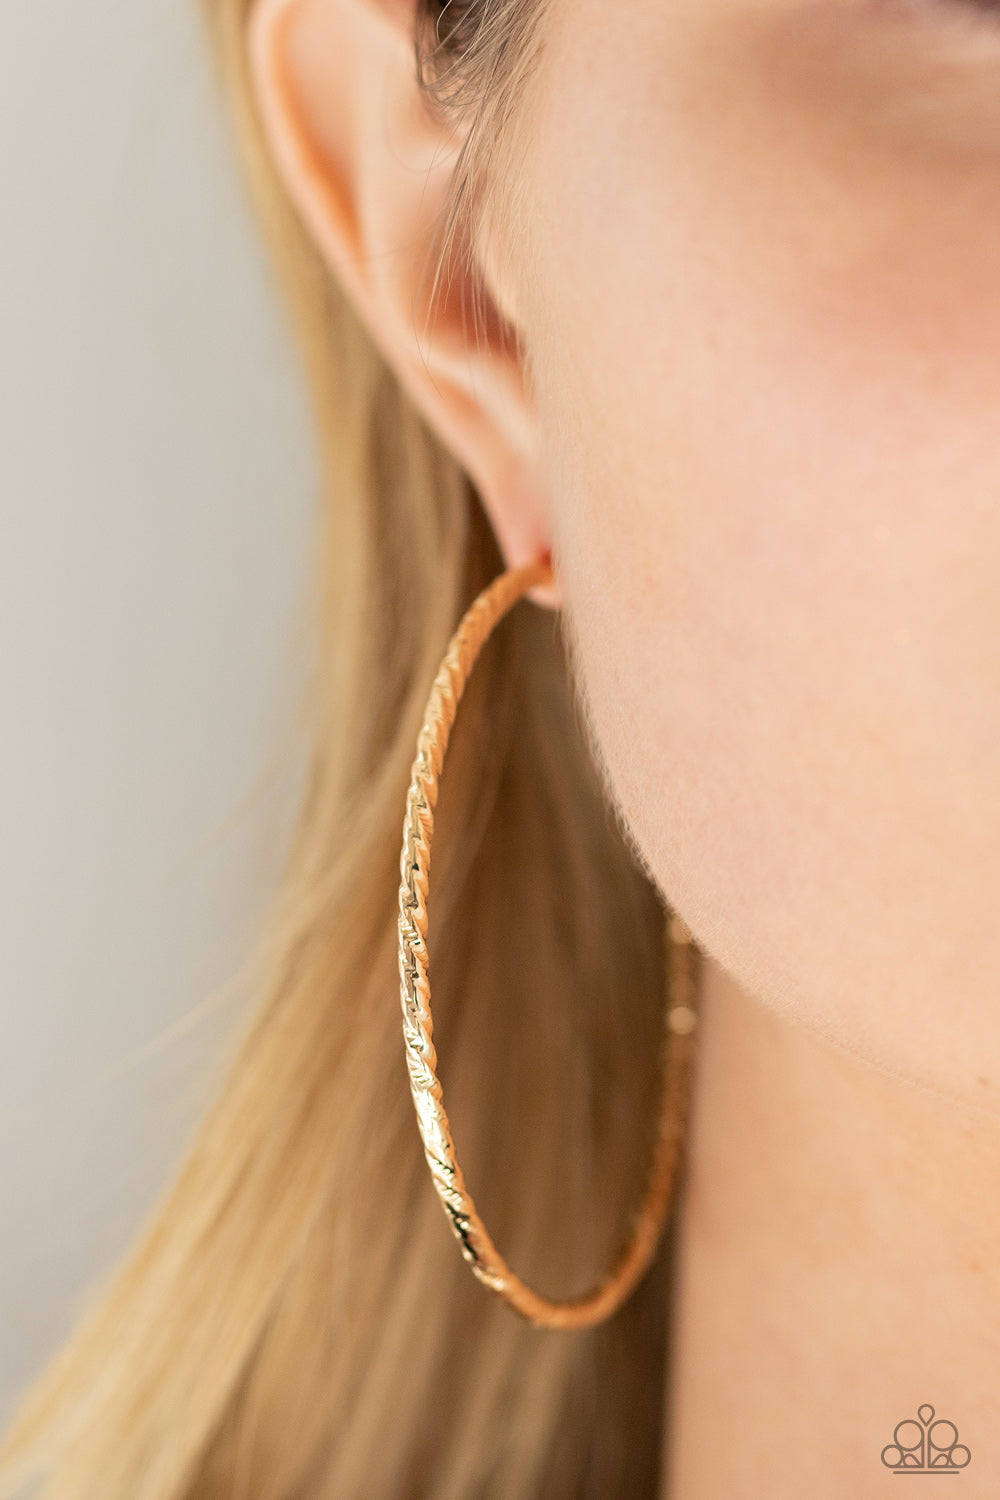 Voluptuous Volume Gold Hoop Earrings